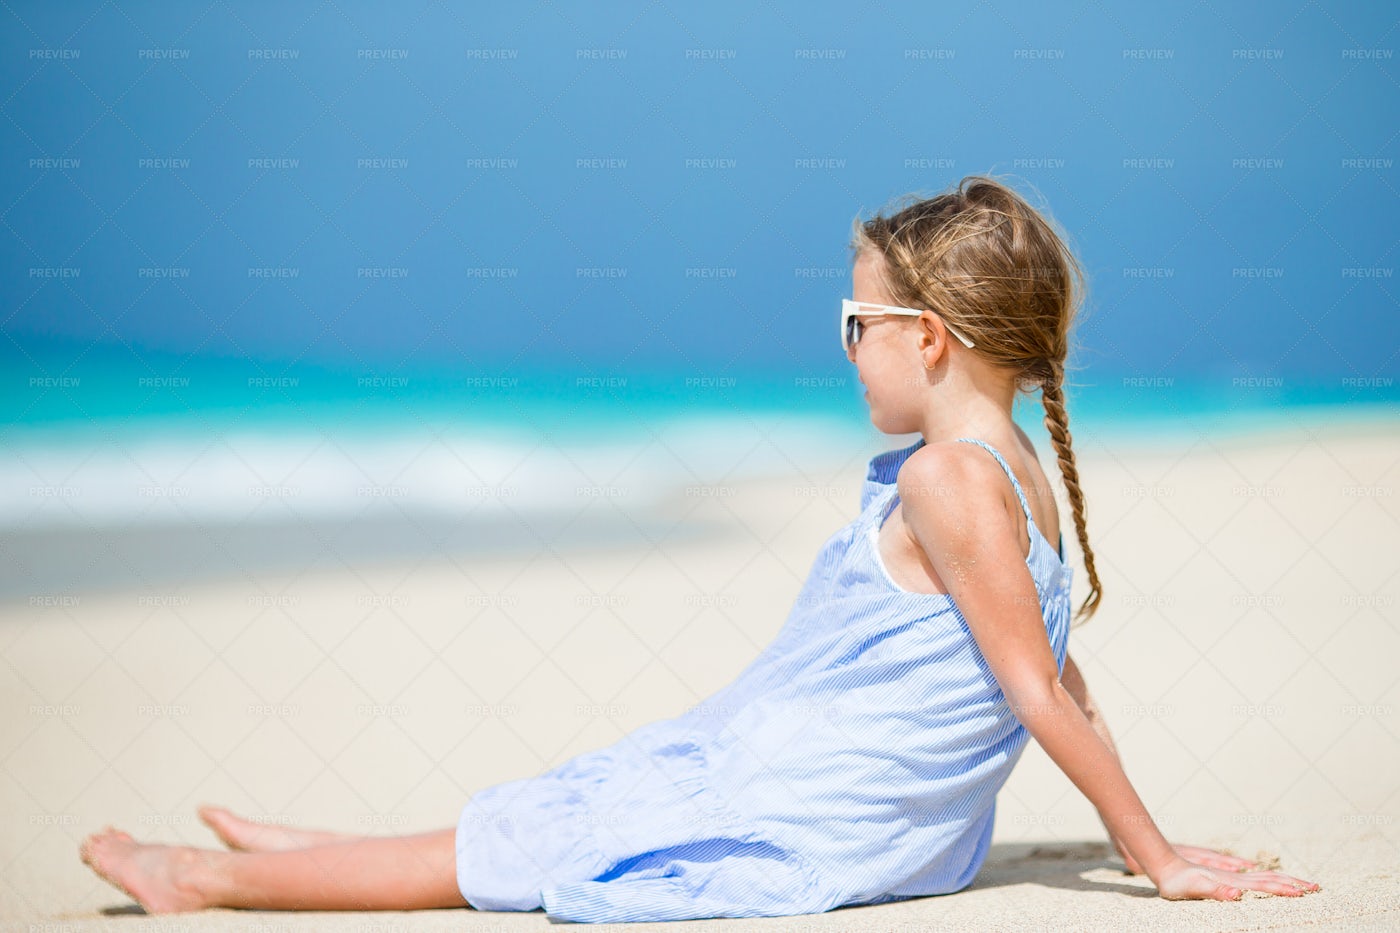 Little Girl On The Beach: Stock Photos